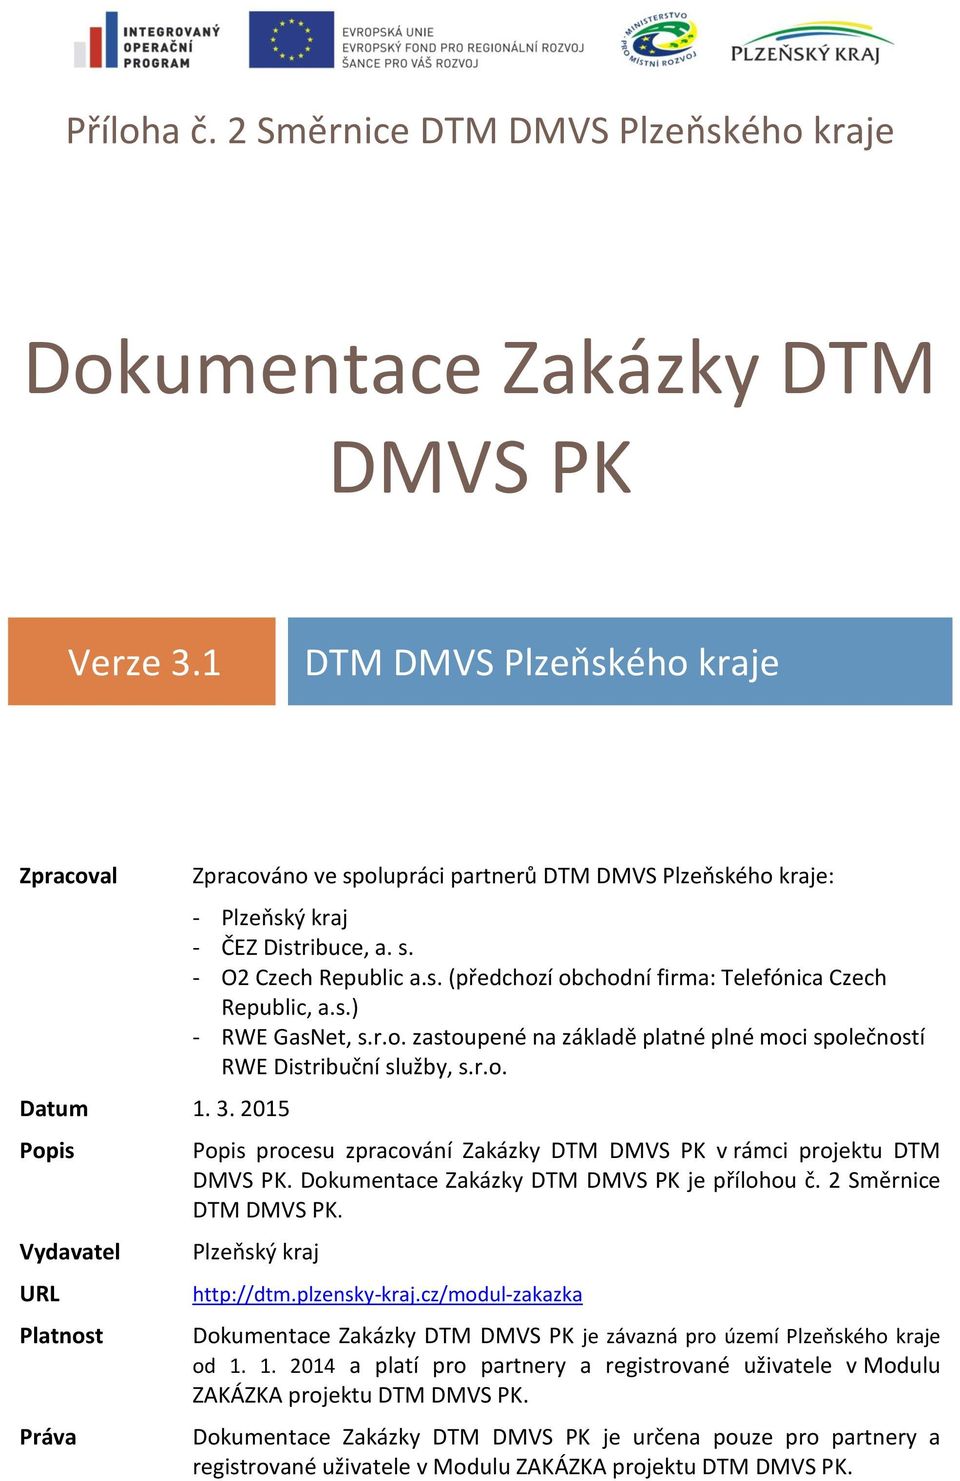 s. (předchozí obchodní firma: Telefónica Czech Republic, a.s.) - RWE GasNet, s.r.o. zastoupené na základě platné plné moci společností RWE Distribuční služby, s.r.o. Popis procesu zpracování Zakázky DTM DMVS PK v rámci projektu DTM DMVS PK.